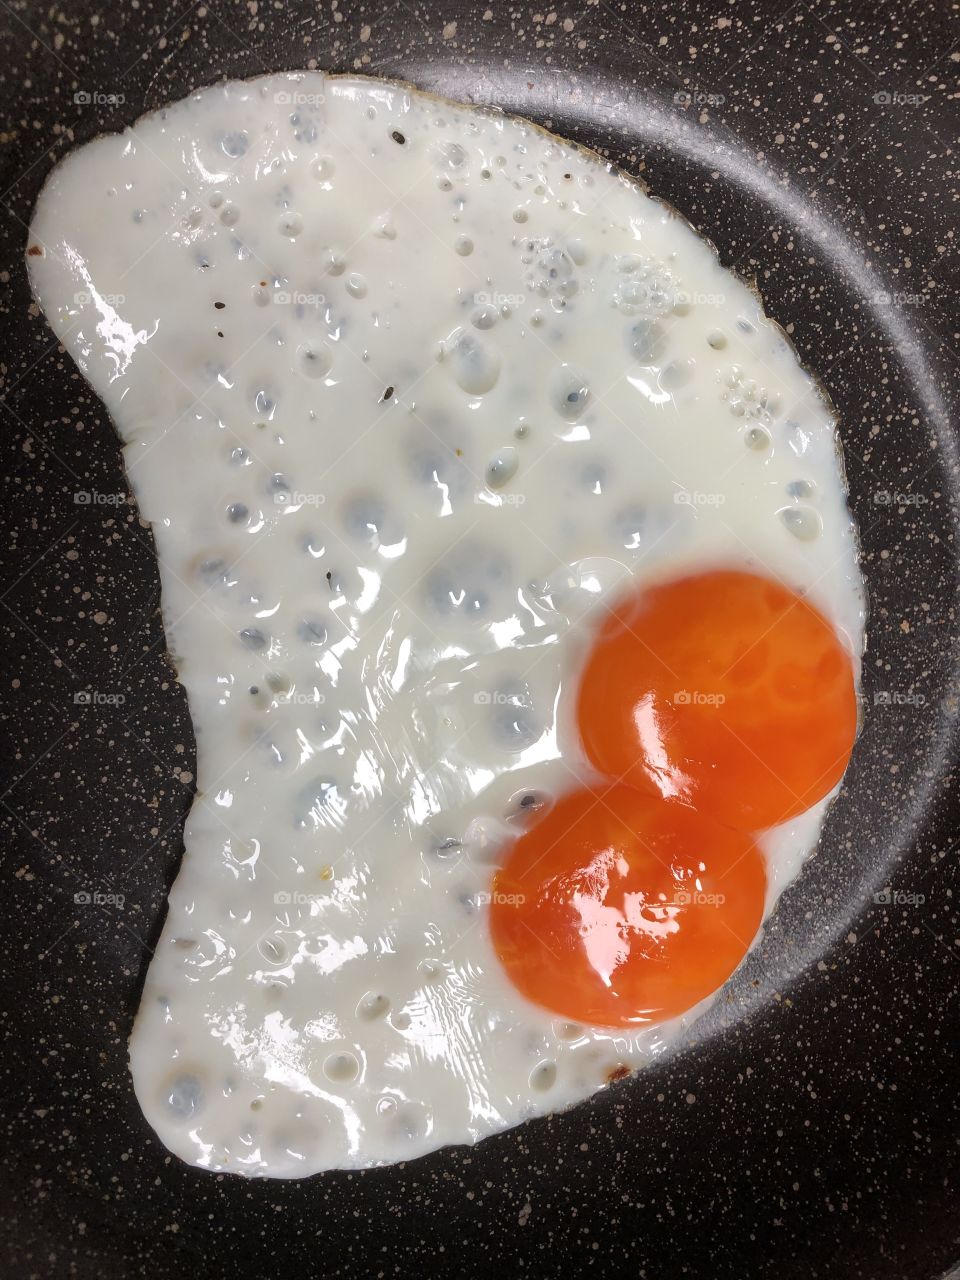 Twin egg yolks moon